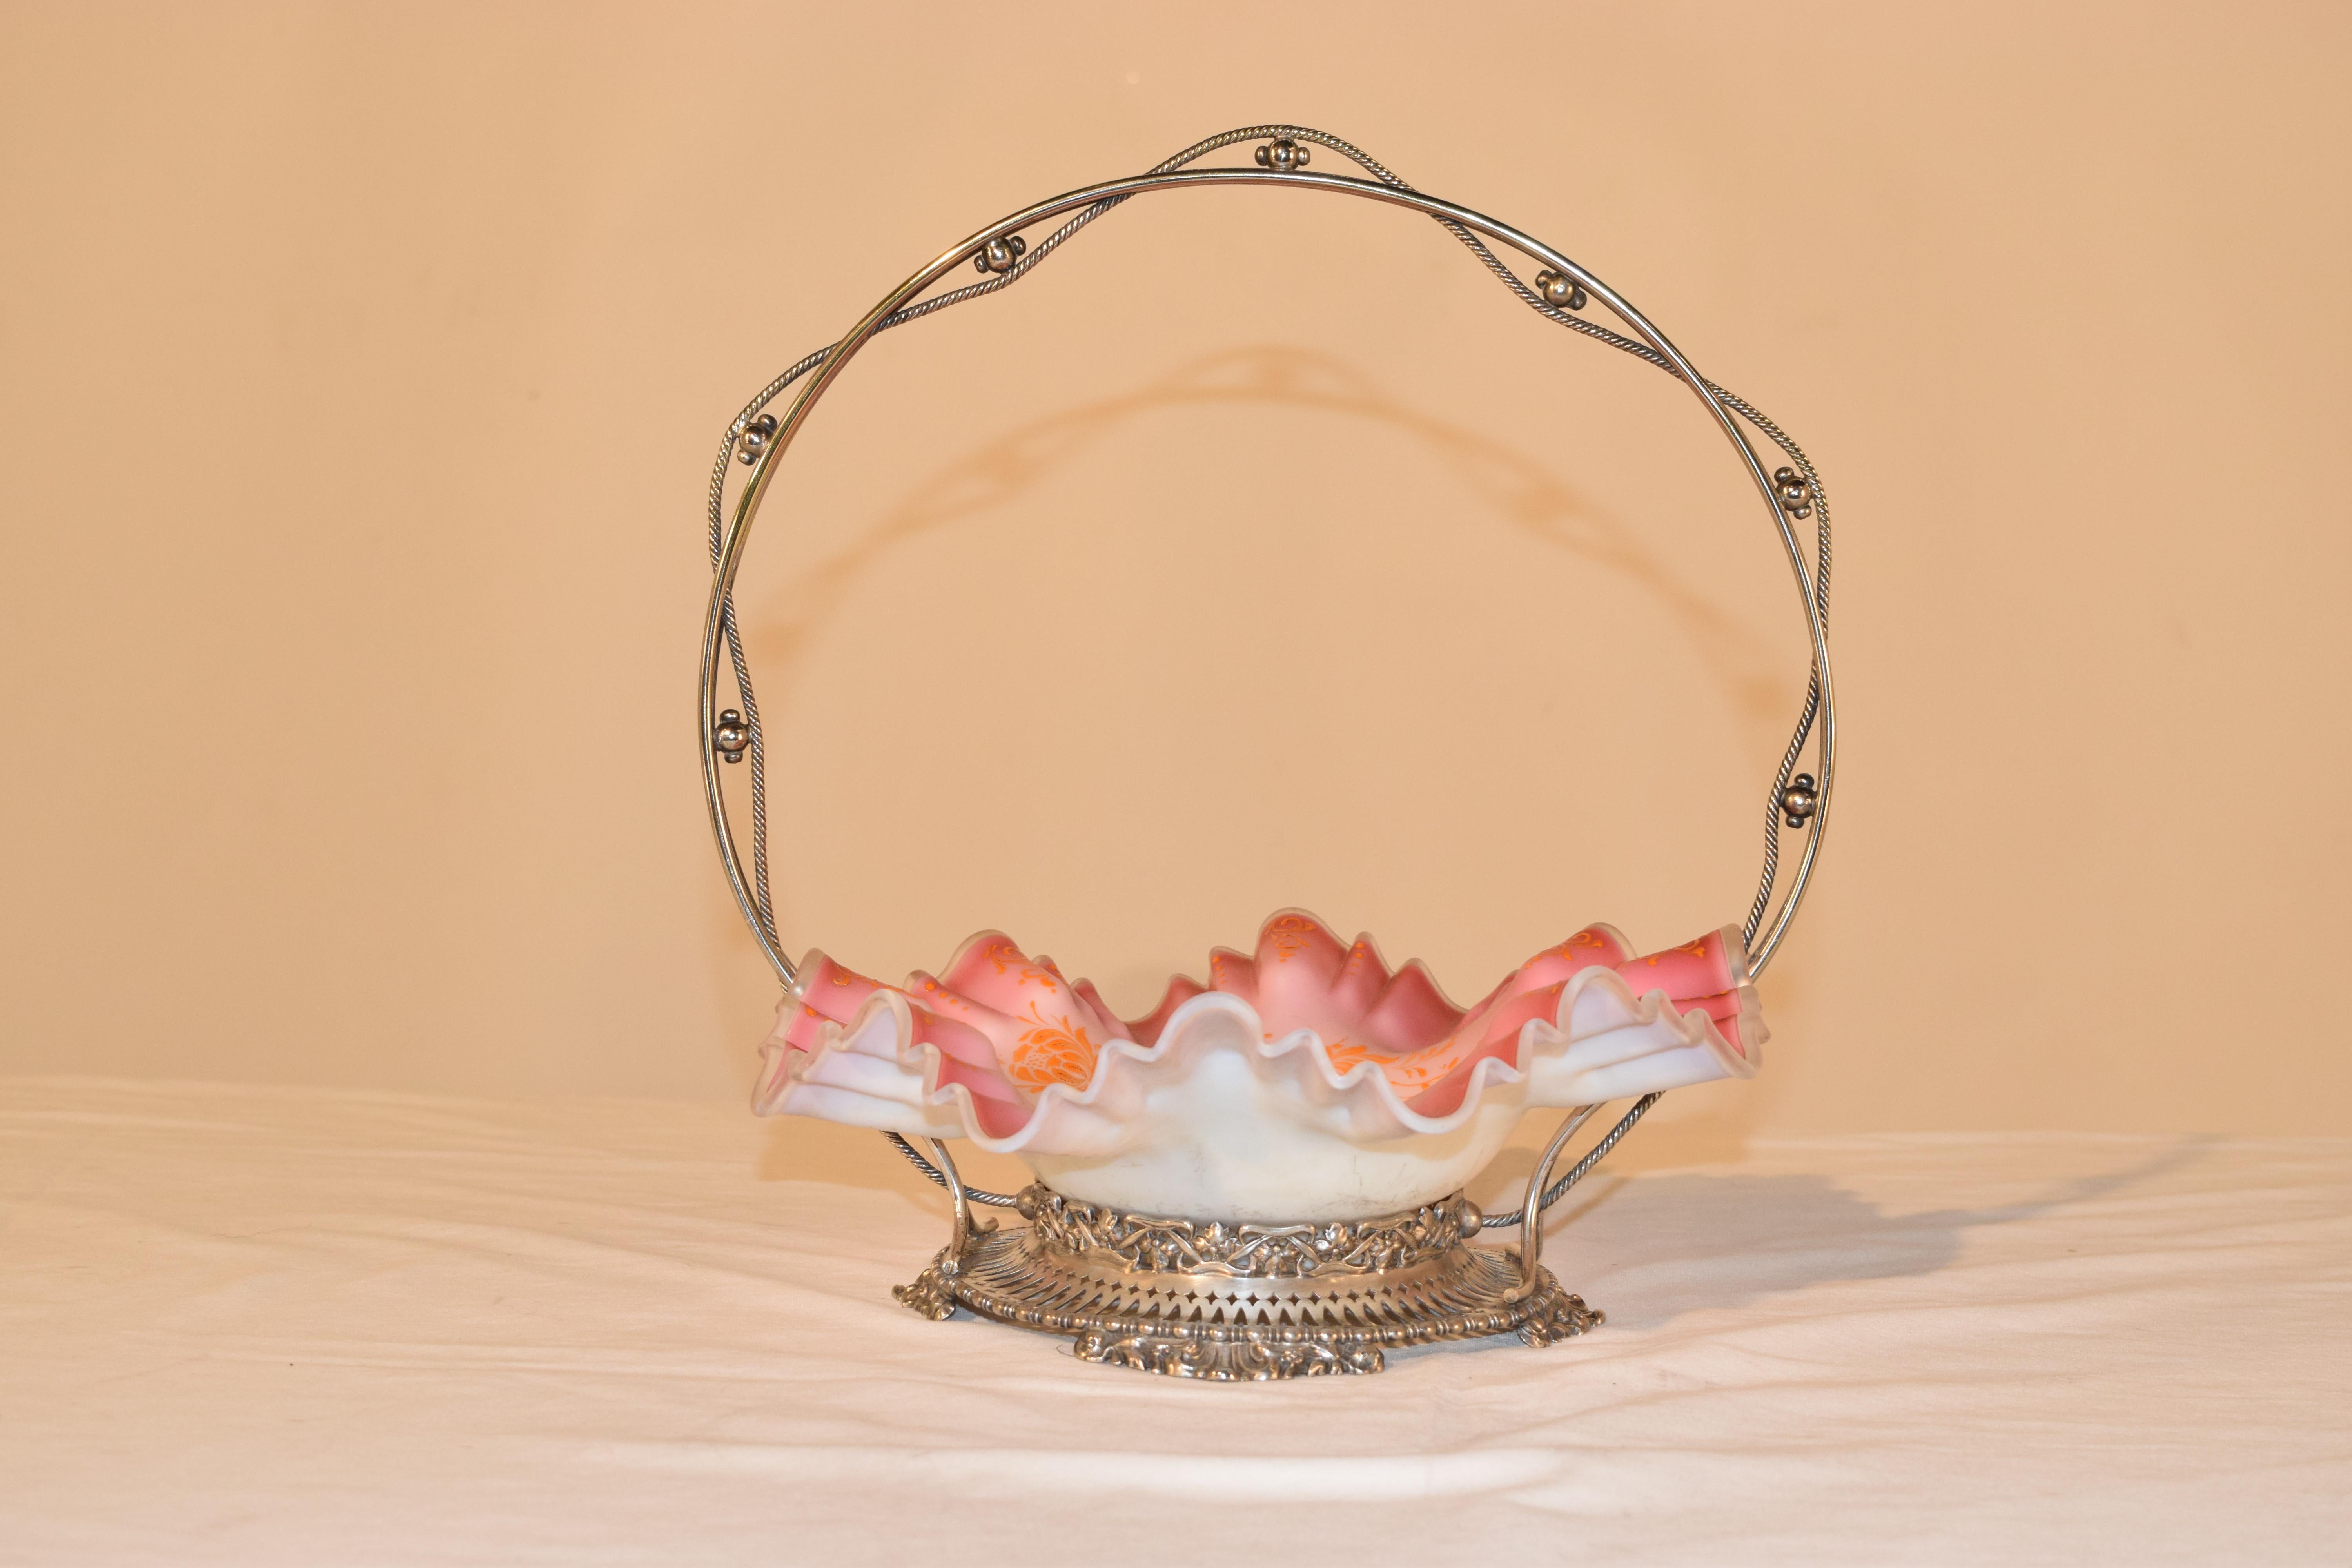 Kunstglaskorb aus dem späten 19. Jahrhundert mit einer Schale aus rosa und weißem satiniertem Glas, die geformt und am Rand geriffelt ist und von Hand mit orangefarbenen Blumen bemalt ist. Die Schale ist mit einer Silberplatte umgeben, die um den